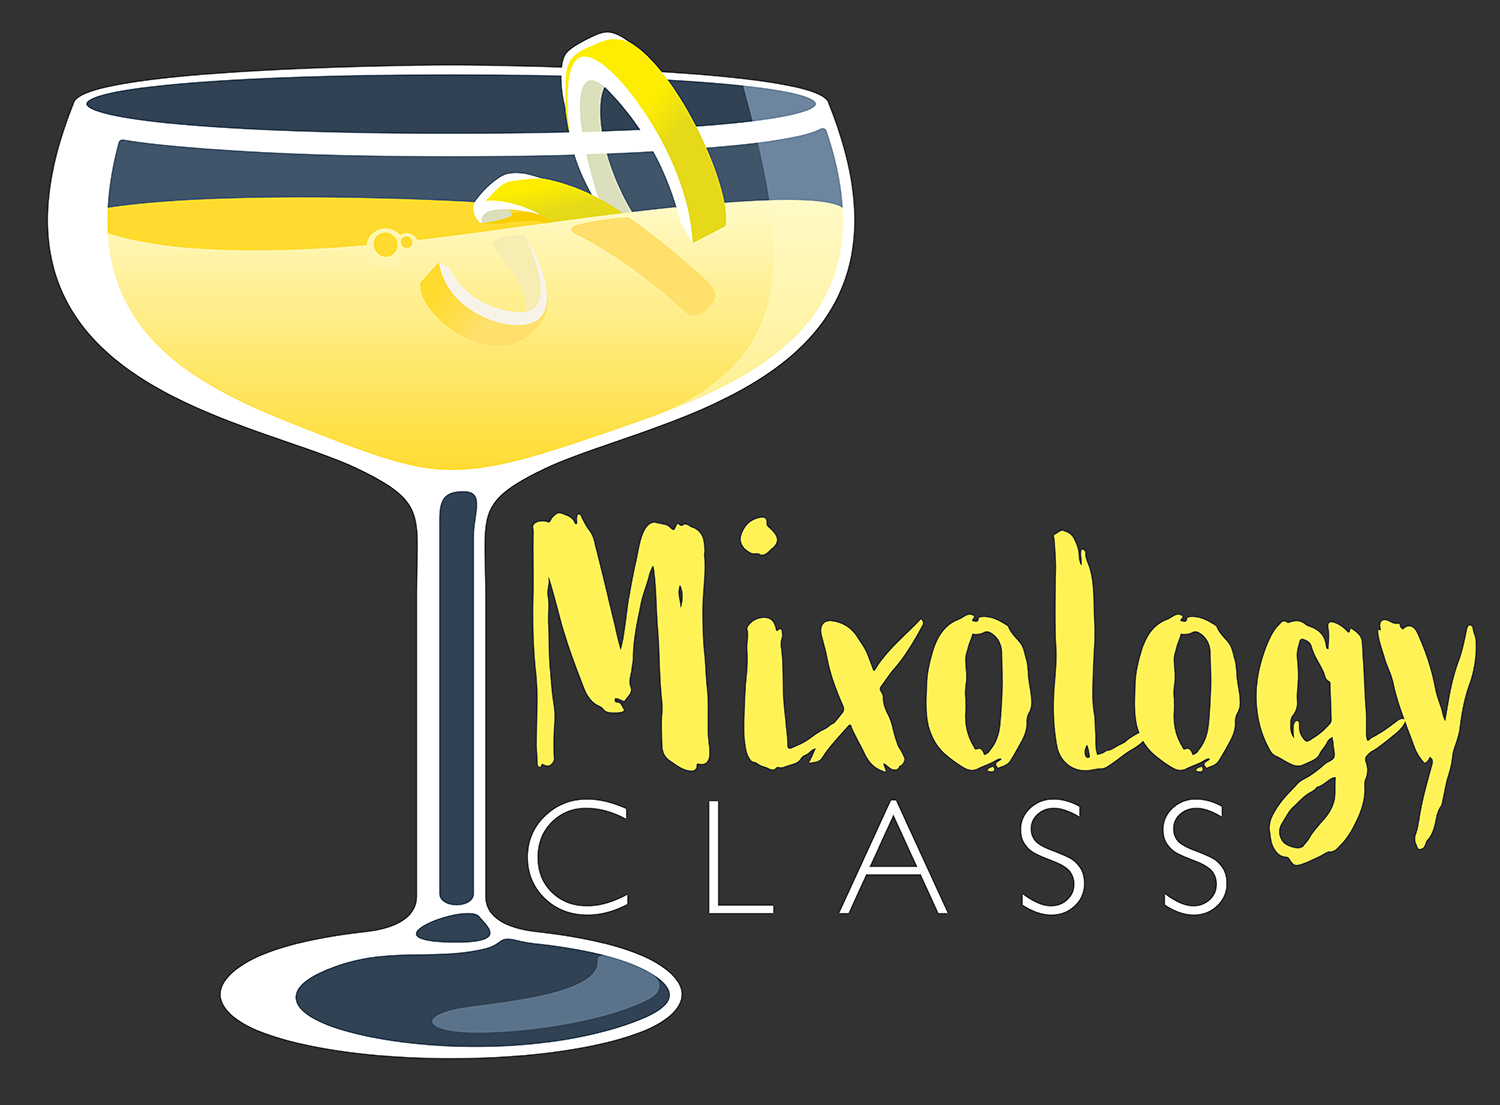 Mixology Class